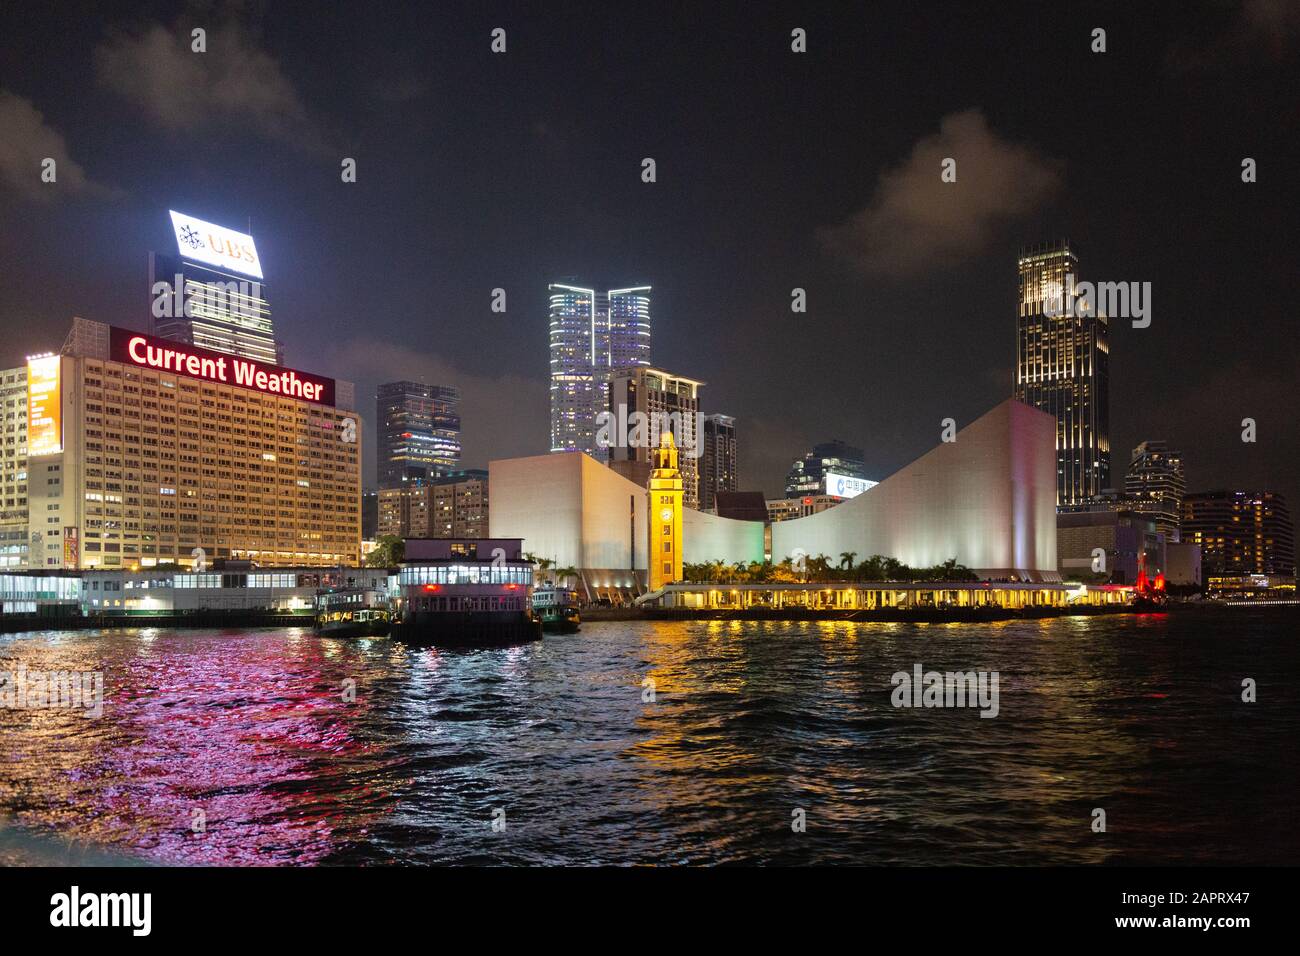 Hafen Hongkong; Der Hong Kong Clock Tower und Star Ferry Pier, nachts von einer Fähre aus gesehen, Tsim Sha Tsui, Kowloon Hongkong Stockfoto